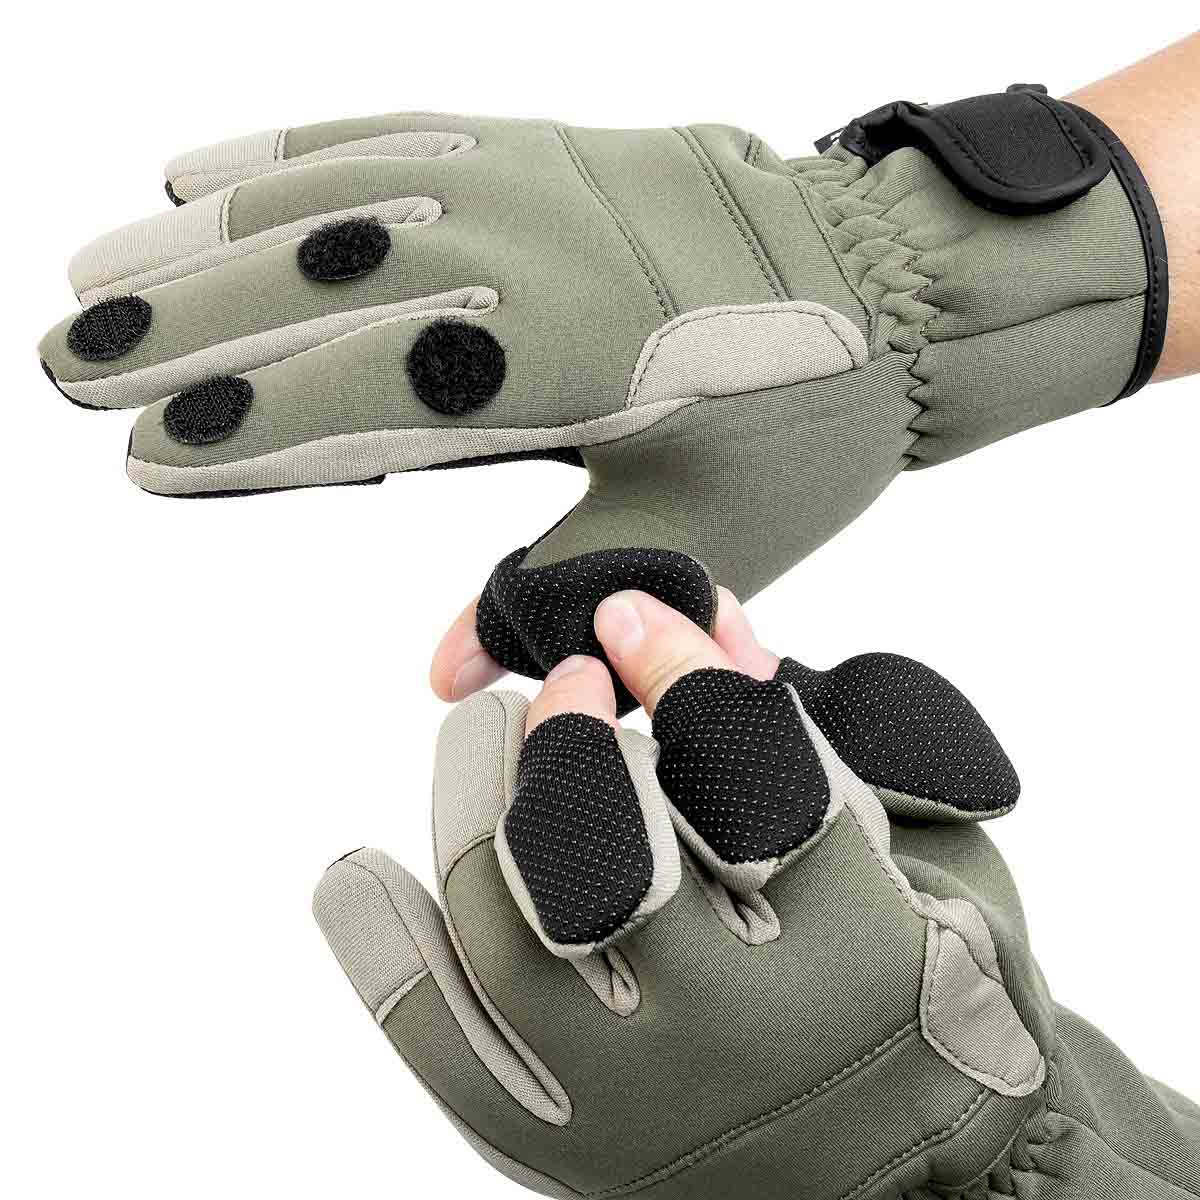 Each Neoprene Ice Fishing Waterproof Glove has three slit fingers providing maximum comfort